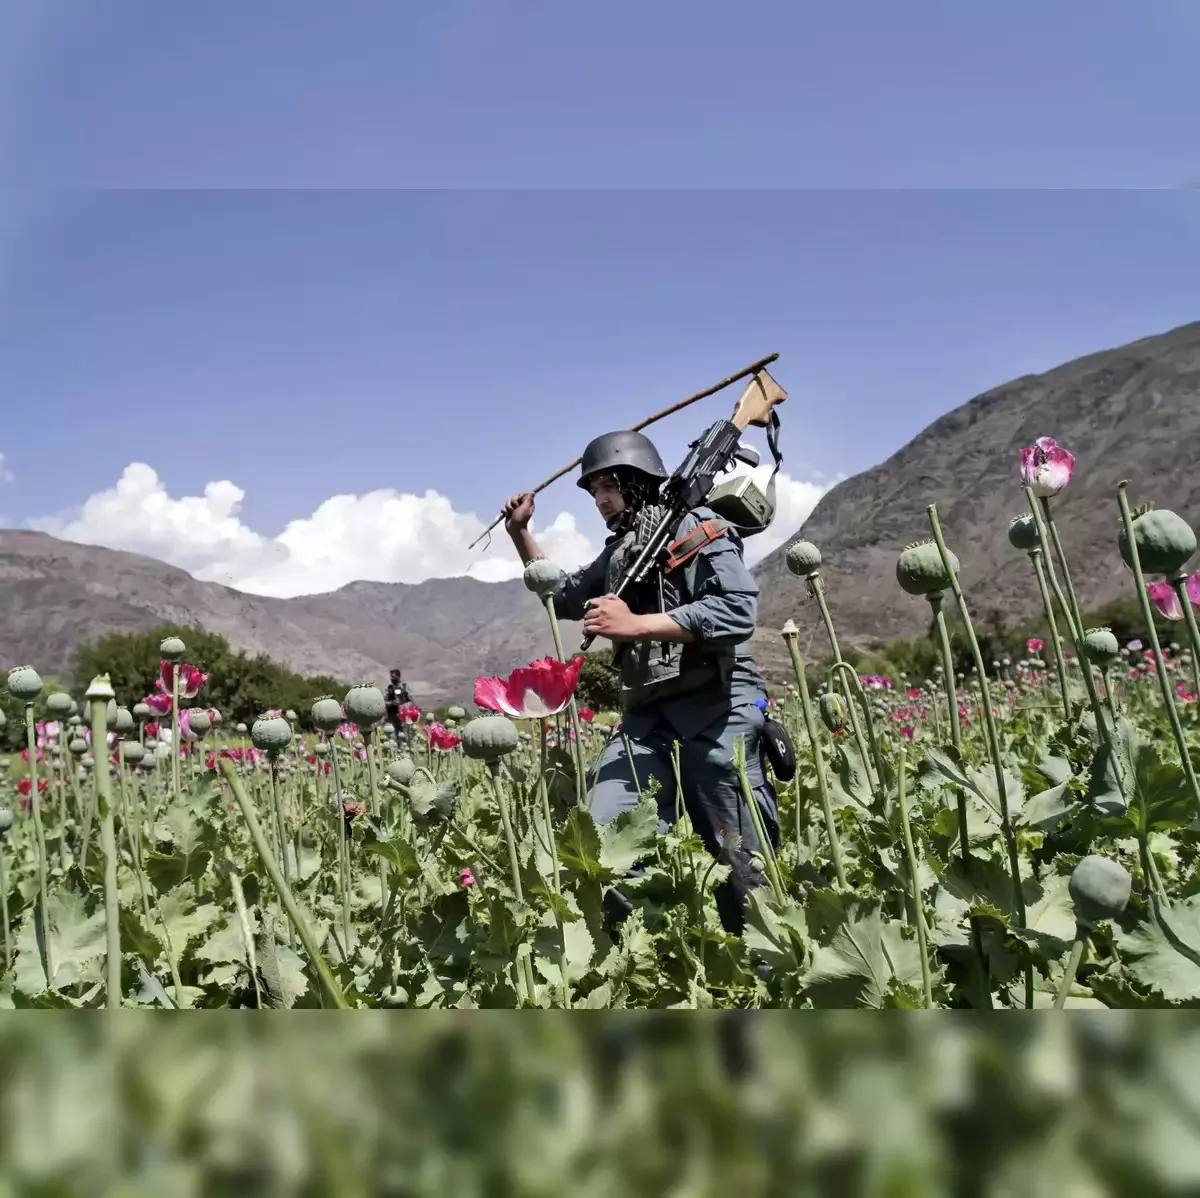 Myanmar surpasses Afghanistan as World’s Largest Source of Opium